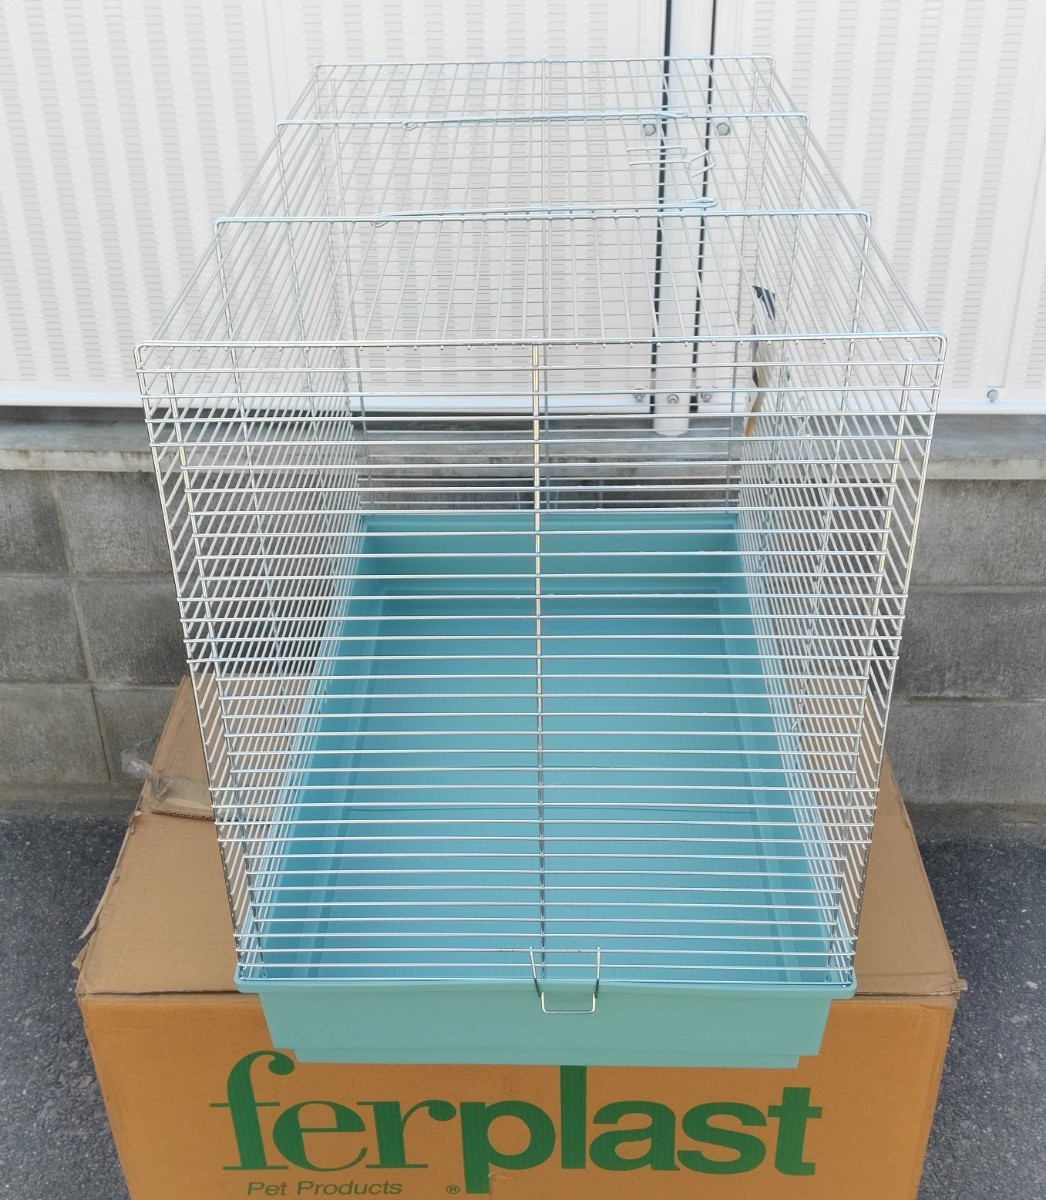  small animals chinchilla super cage gray 78×49×69. Italy ferplast fur p last Cincilla Super 570374 JAN8010690 3h190s